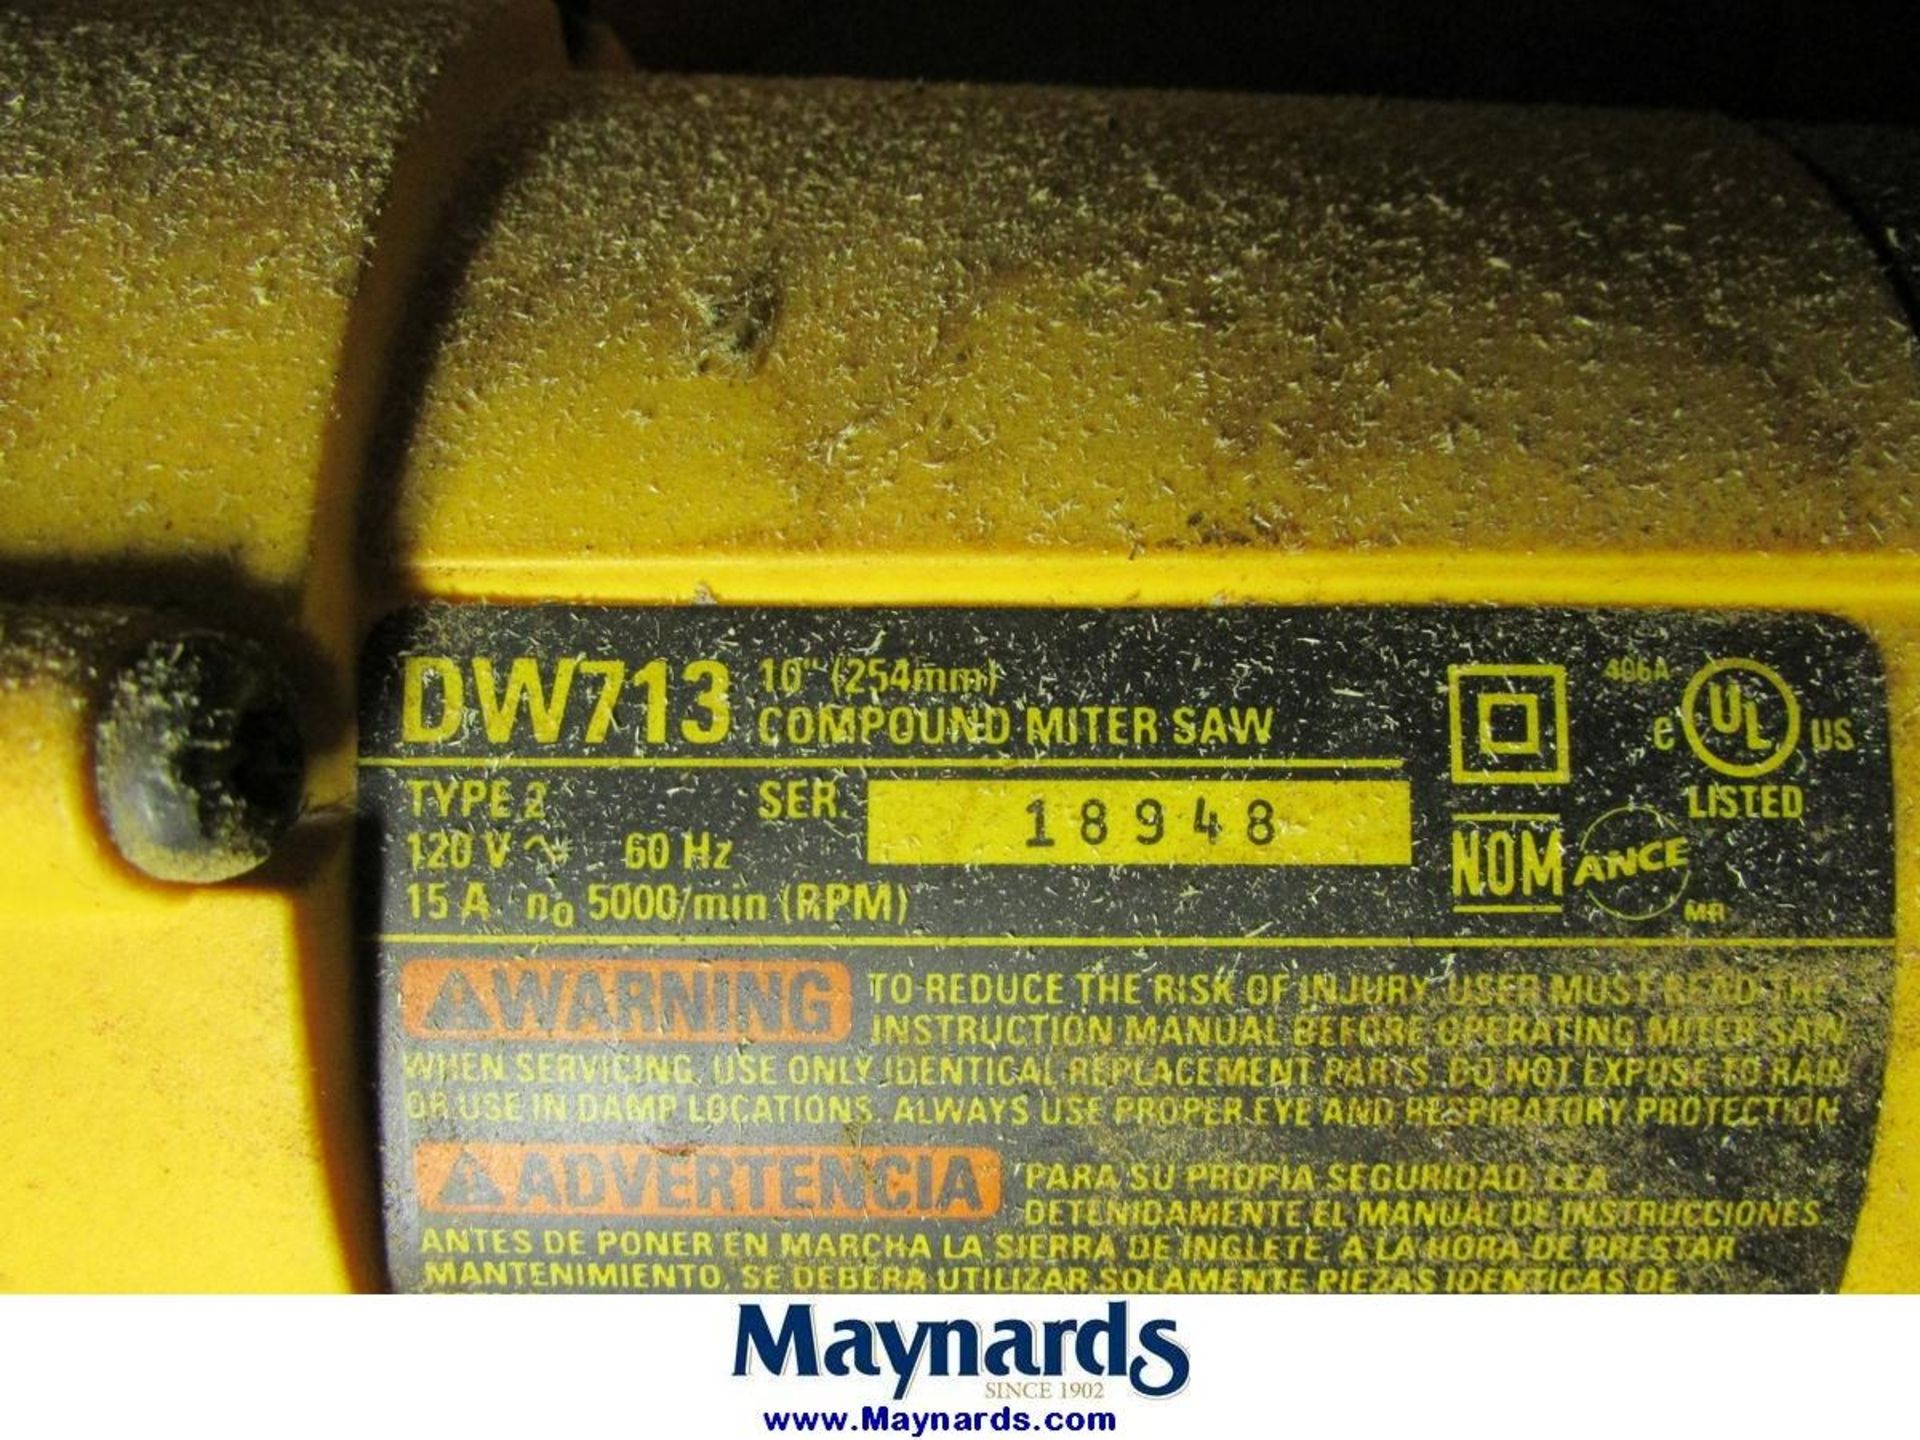 DeWalt DW713 10" Compound Miter Saw - Image 6 of 7